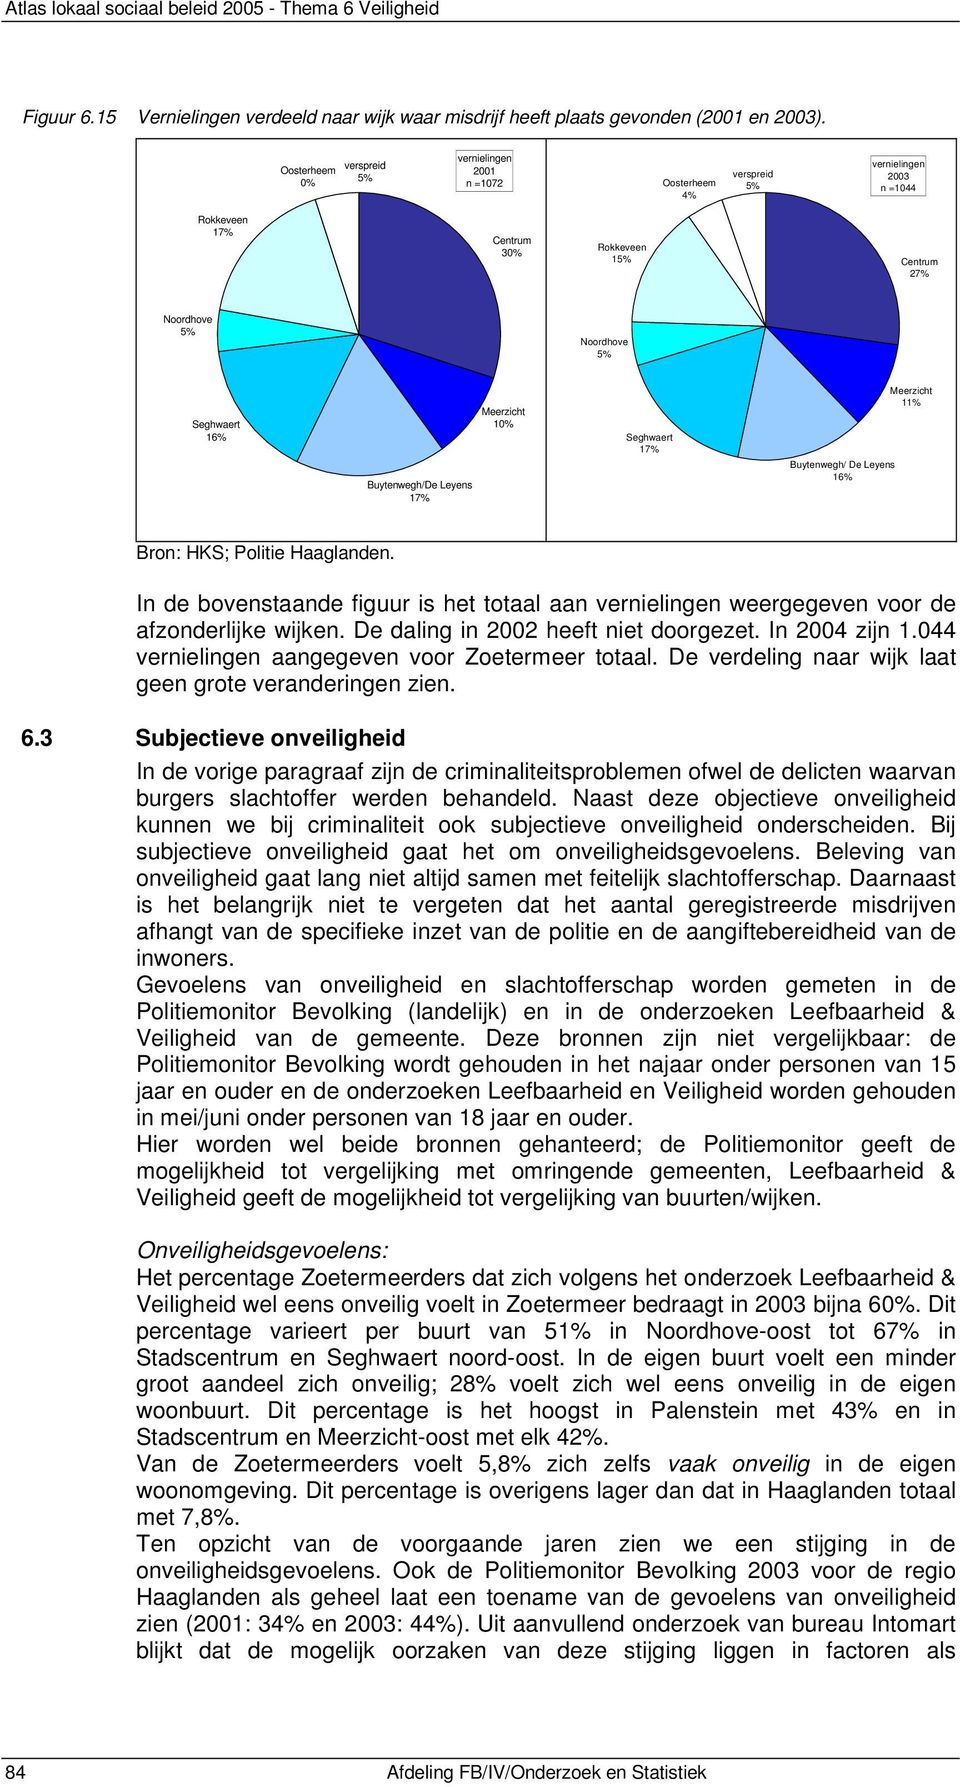 044 vernielingen aangegeven voor Zoetermeer totaal. De verdeling naar wijk laat geen grote veranderingen zien. 6.